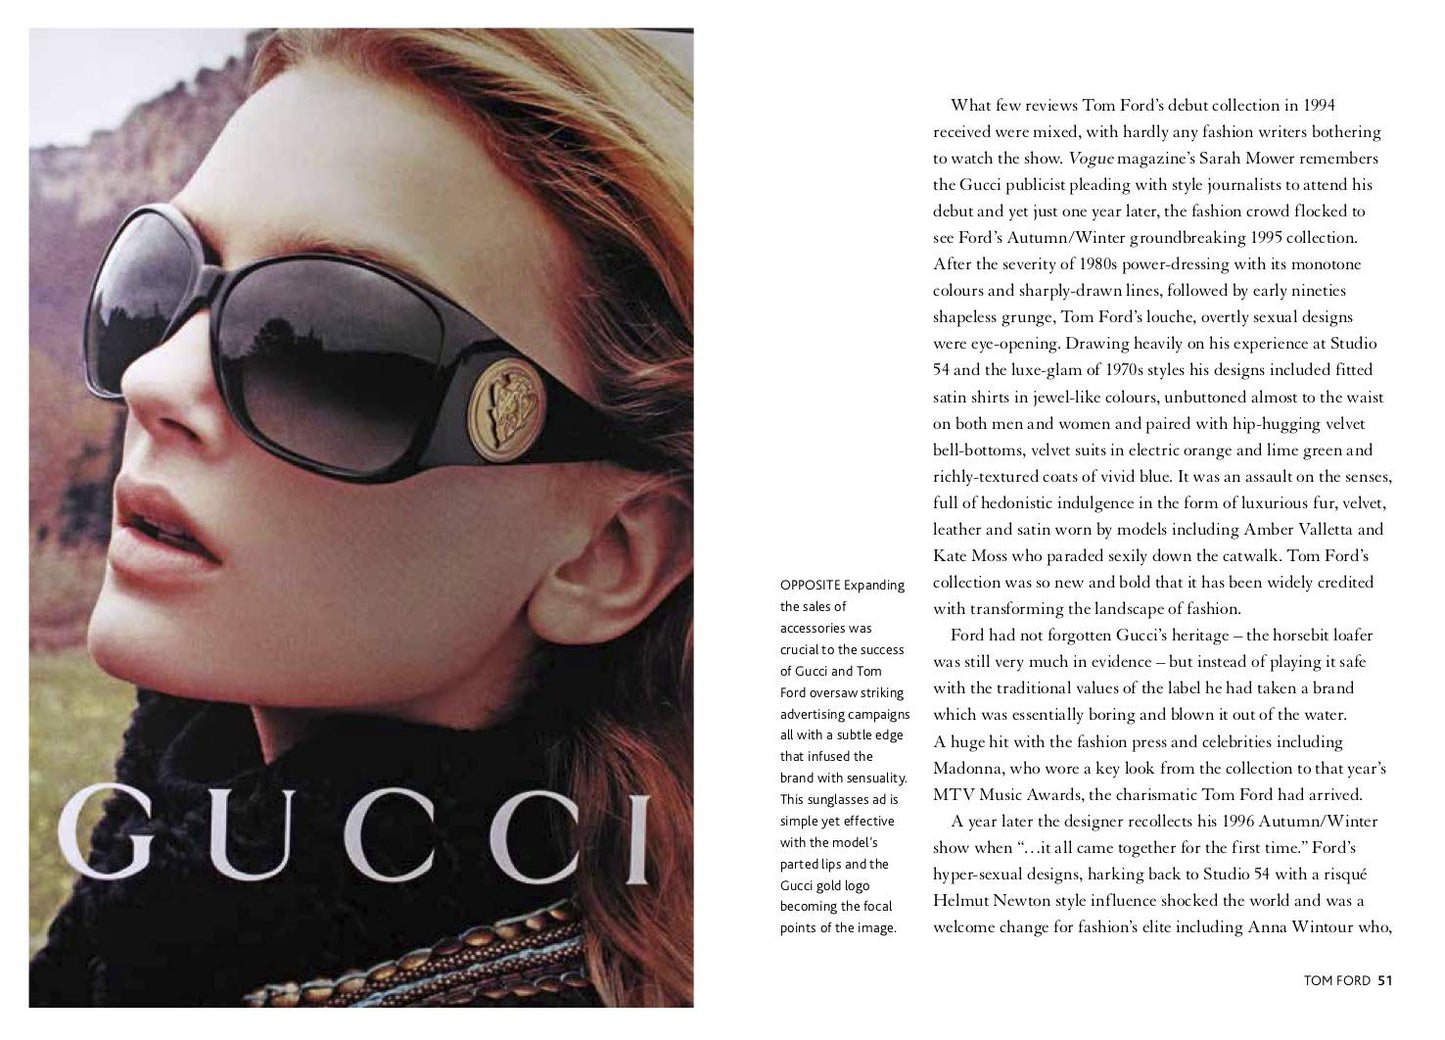 Karen Homer: The Little Book of Gucci